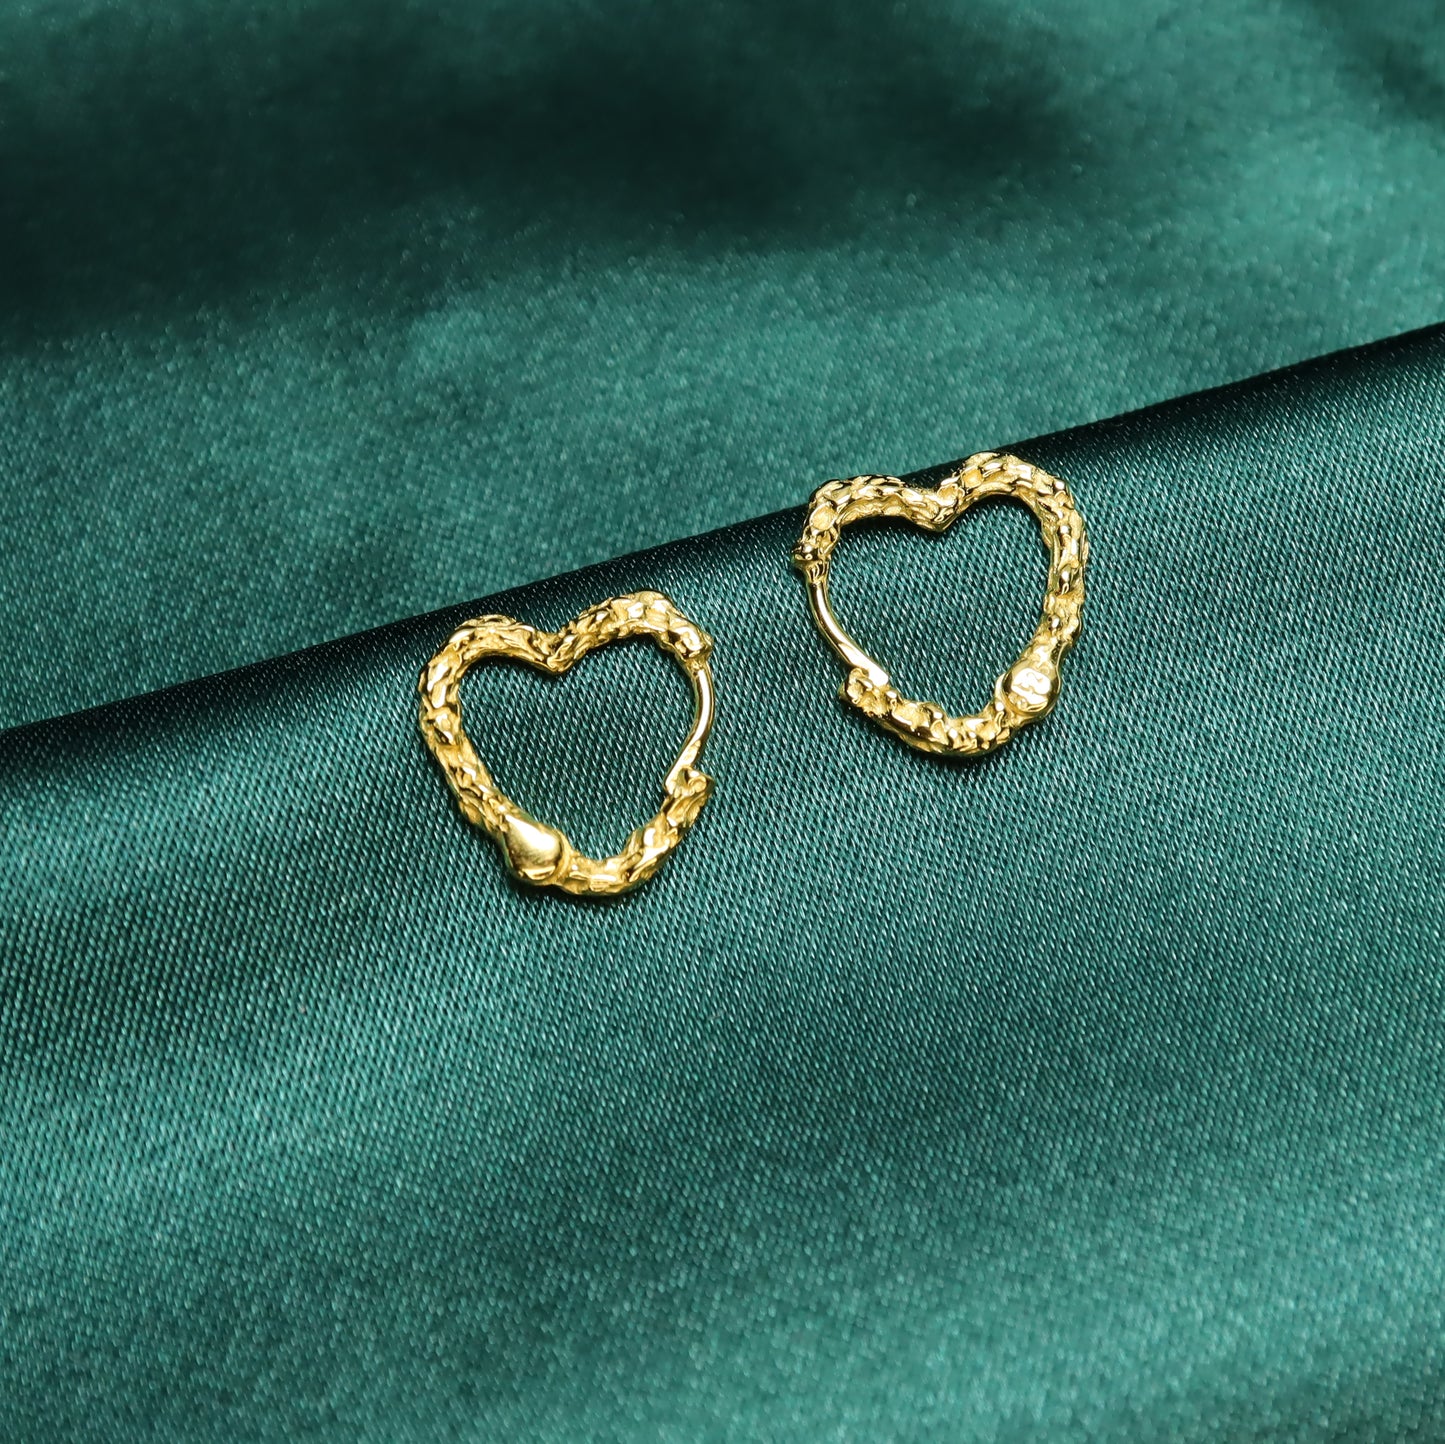 Fiery Love - S925 Sterling Silver Heart Shape Hoop Earrings (Color: Gold)